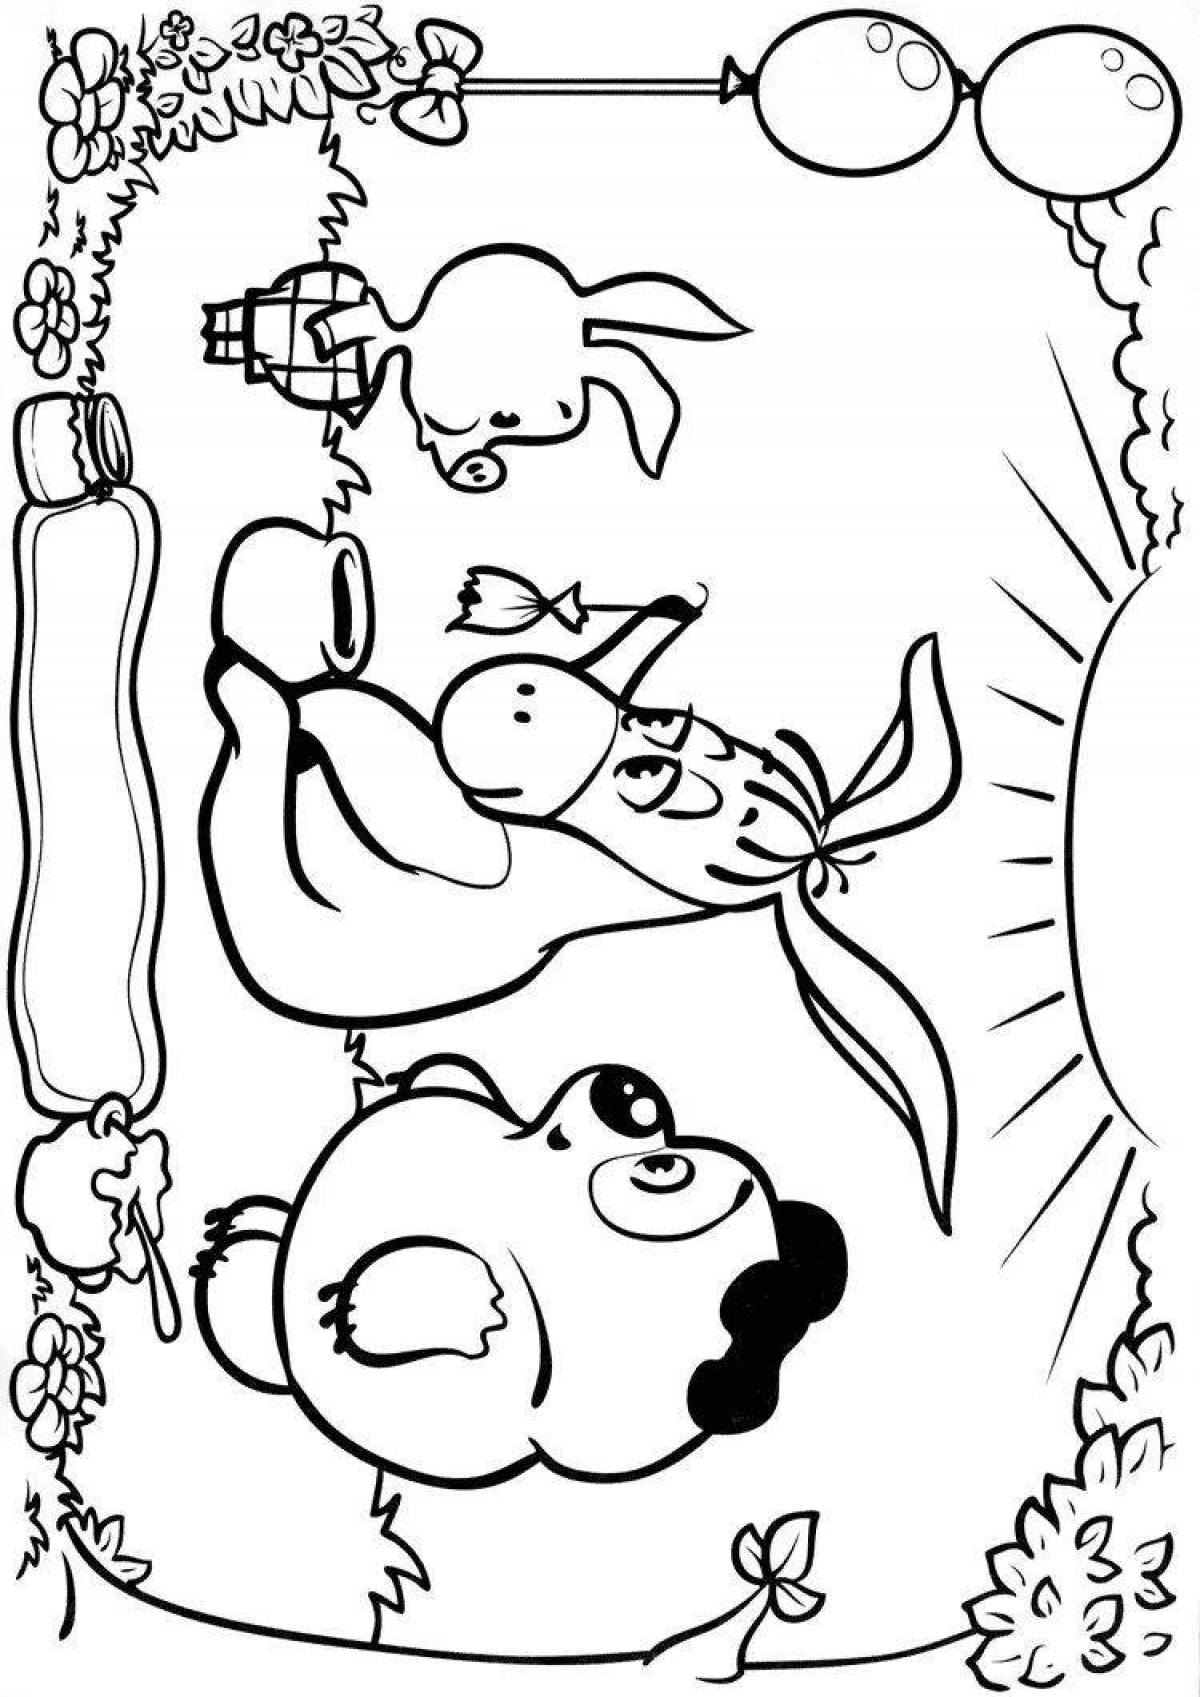 Симпатичная раскраска союзмультфильм винни-пух